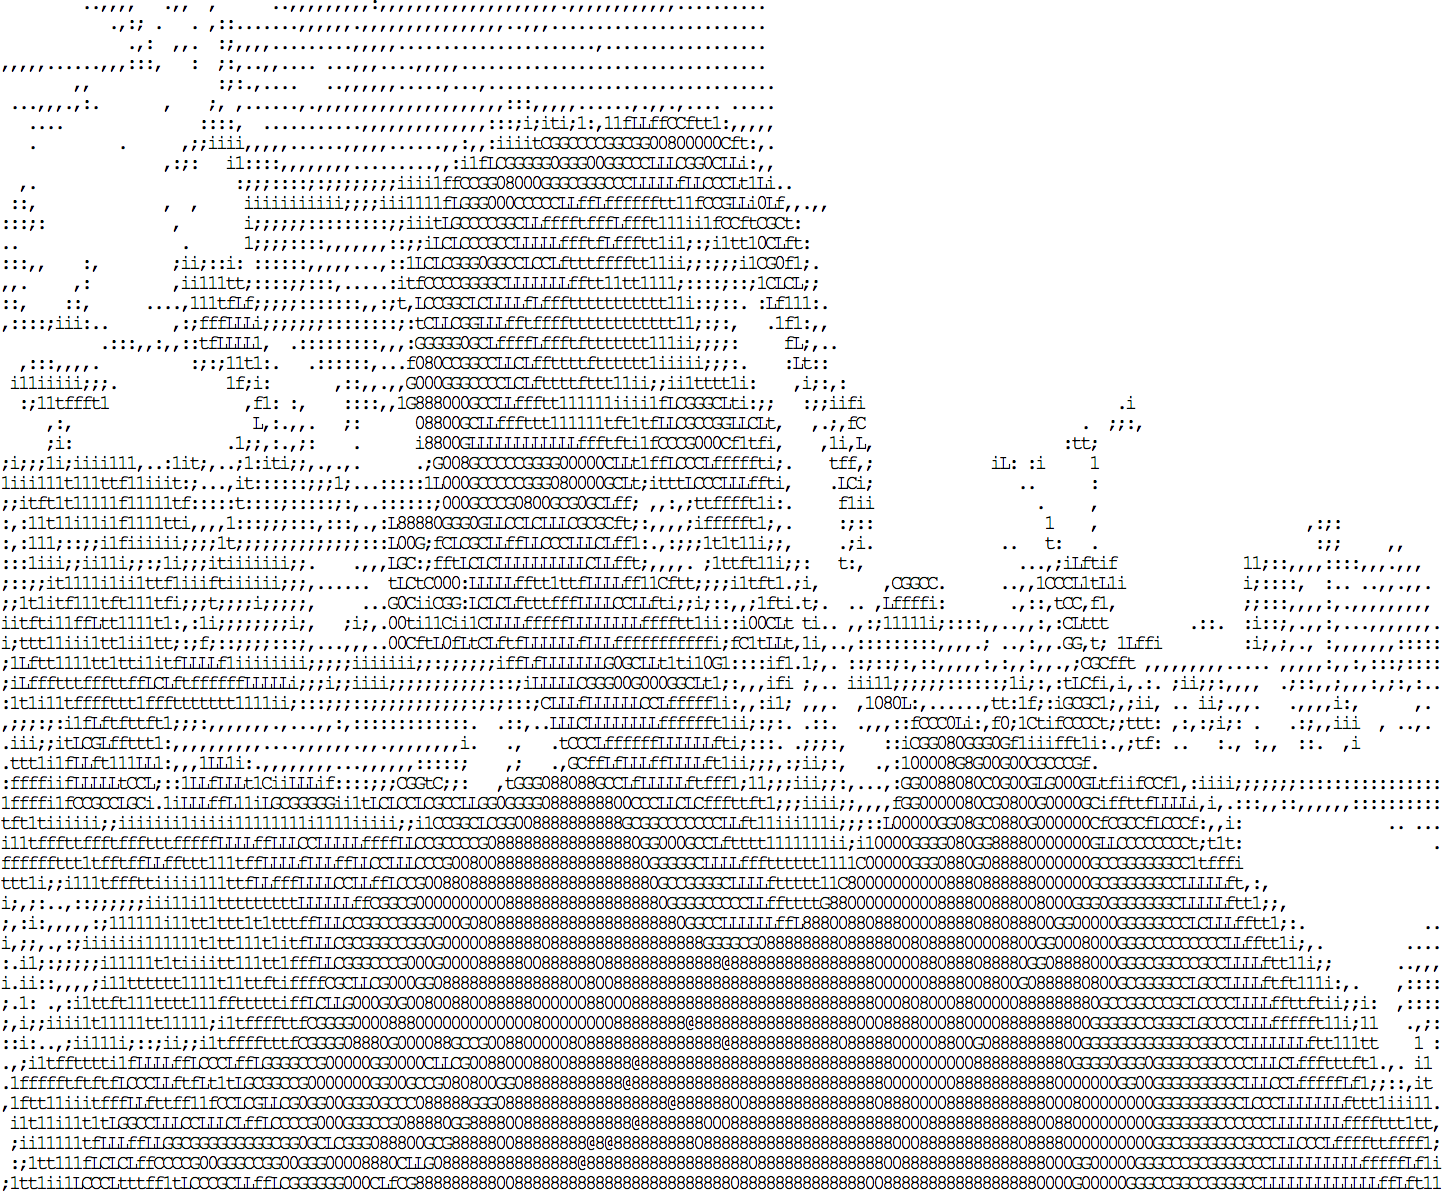 由 idevelop.ro/ascii-camera 生成的 ASCII 图片